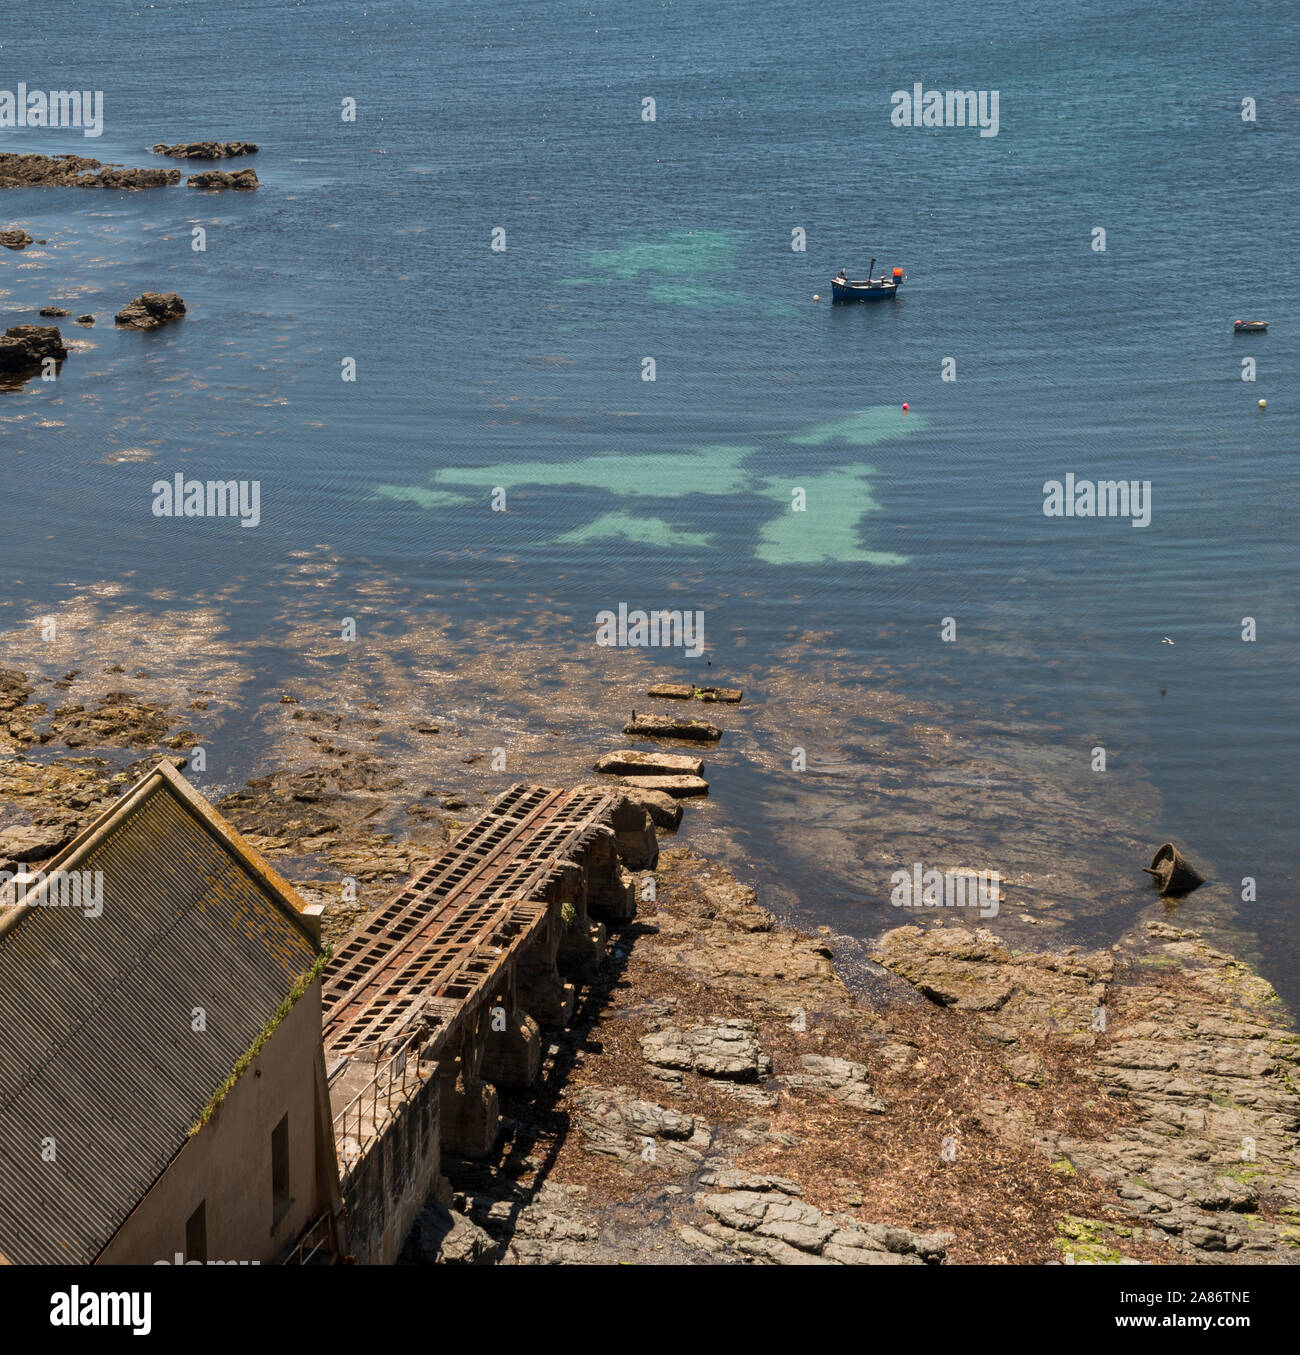 La scialuppa di salvataggio abbandonate stazione presso la lucertola sulla costa sud ovest percorso. Foto Stock